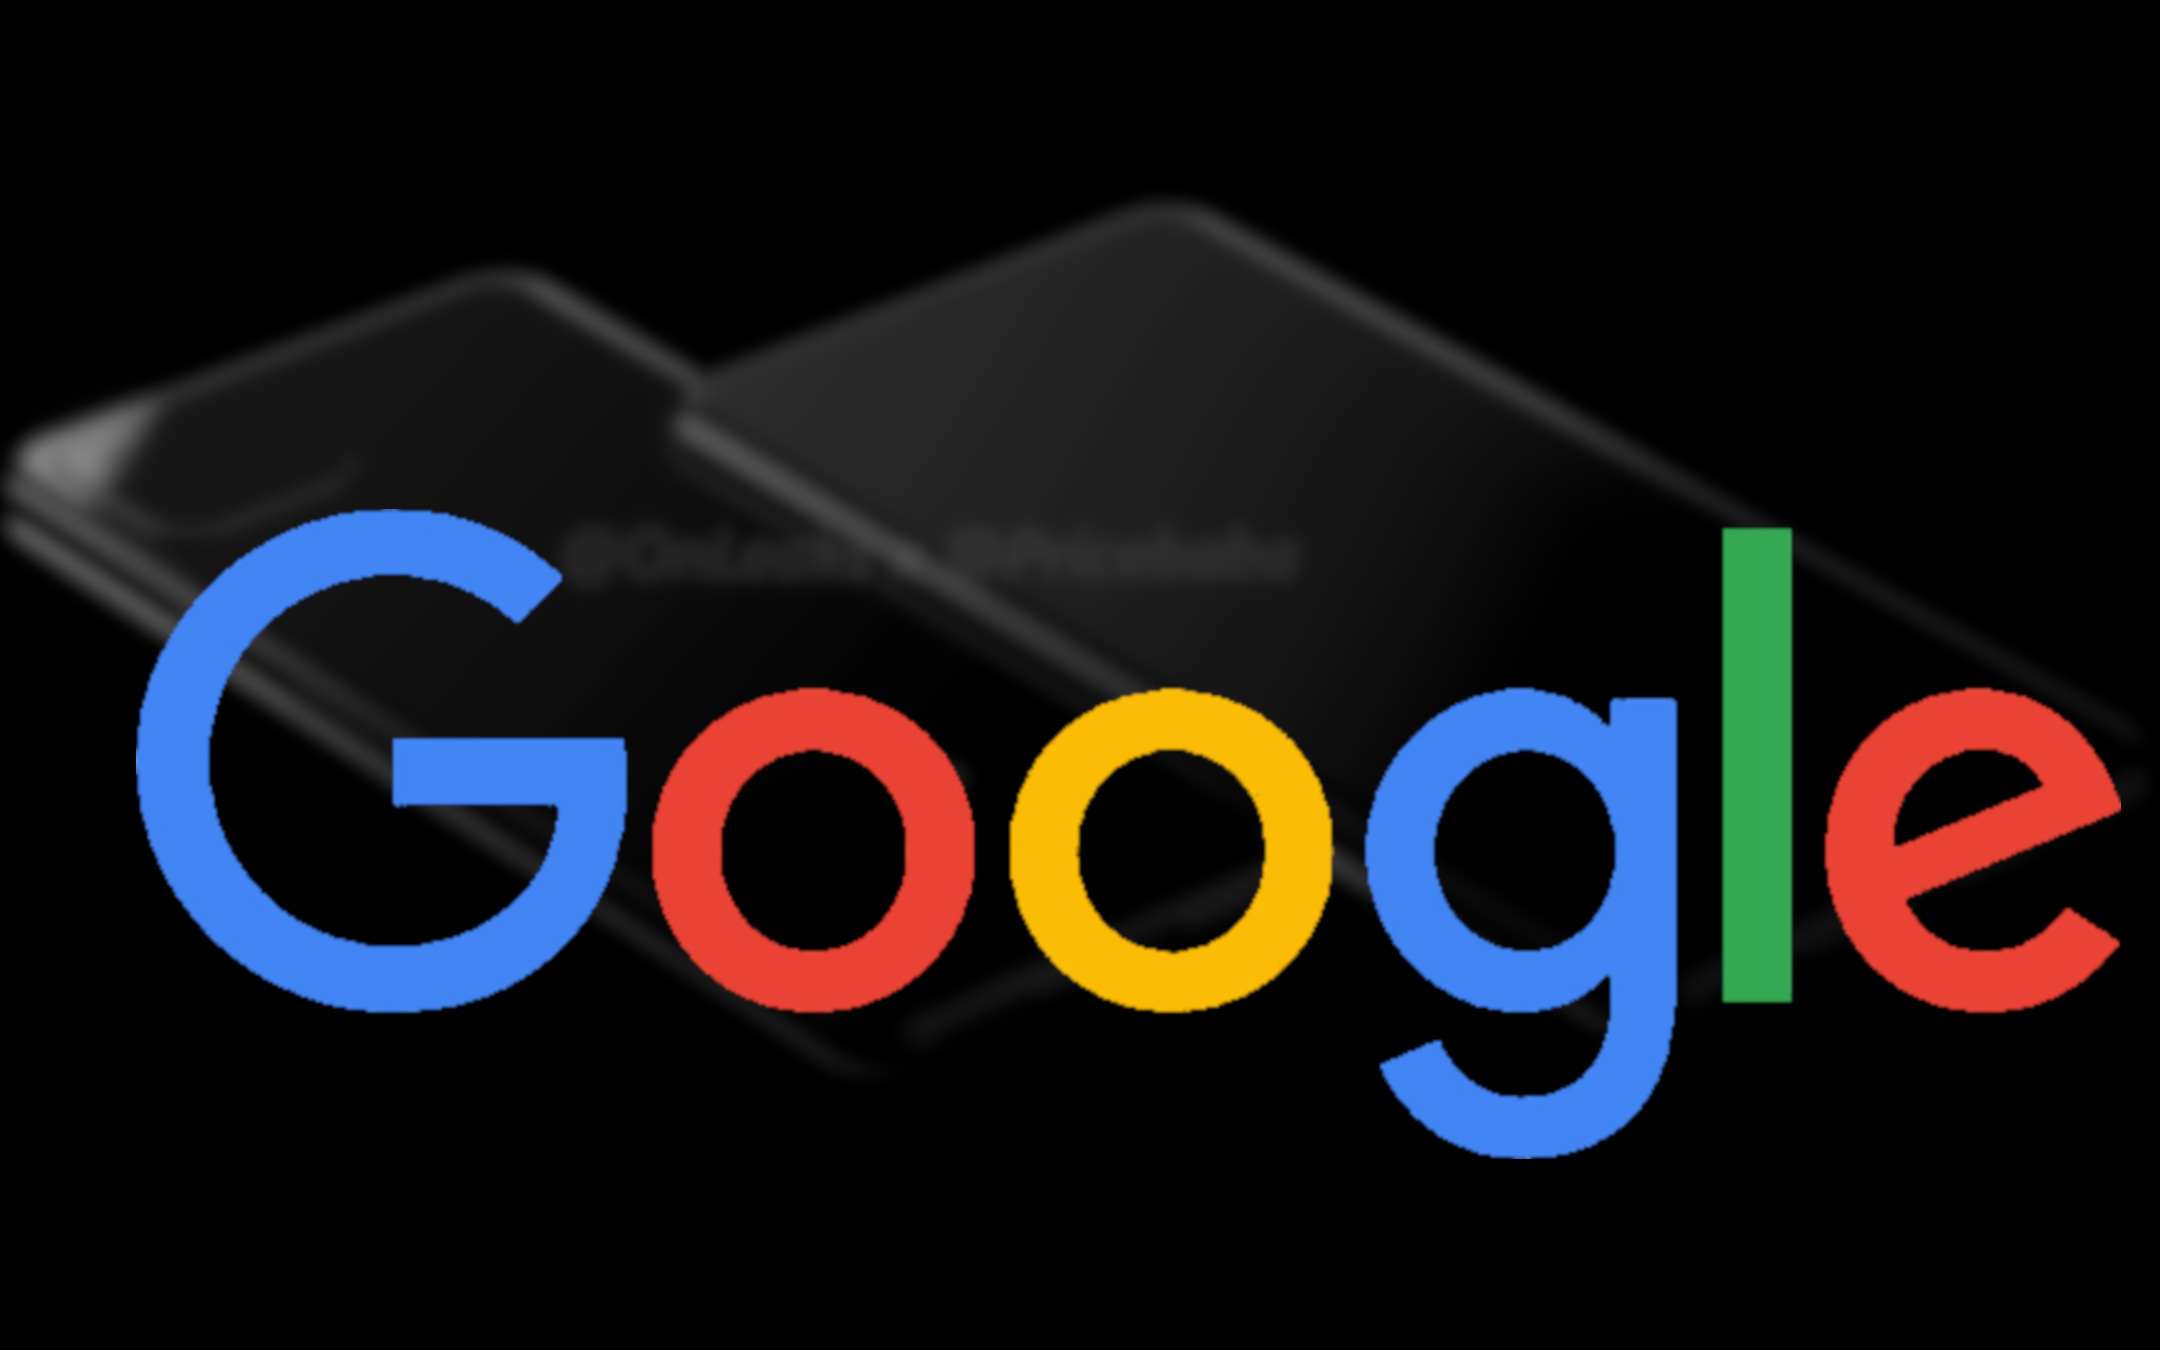 Google Pixel 4: fotocamera quadrata come iPhone 11